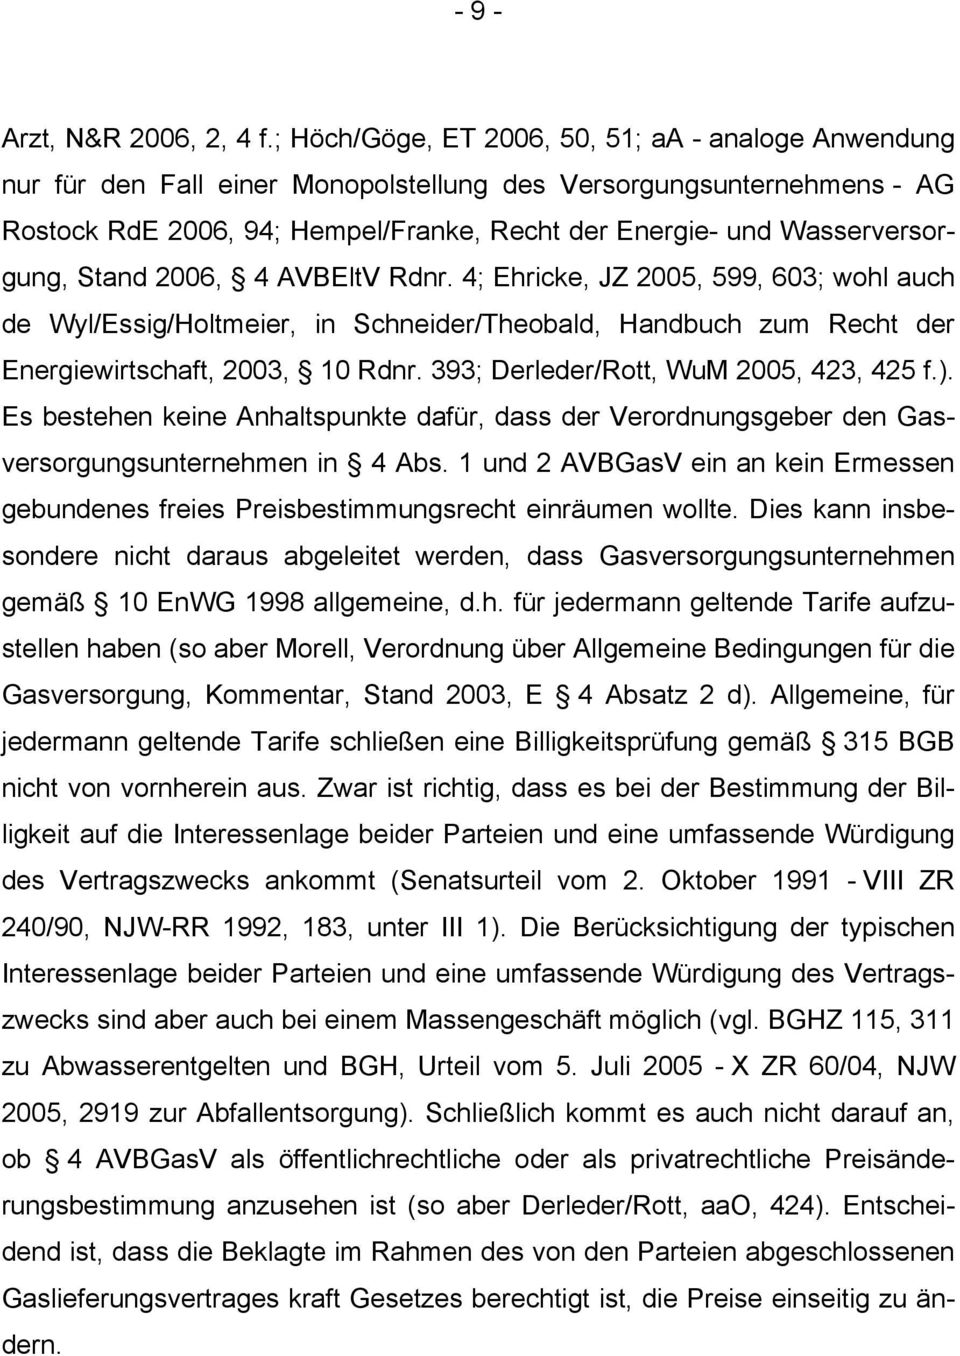 Wasserversorgung, Stand 2006, 4 AVBEltV Rdnr. 4; Ehricke, JZ 2005, 599, 603; wohl auch de Wyl/Essig/Holtmeier, in Schneider/Theobald, Handbuch zum Recht der Energiewirtschaft, 2003, 10 Rdnr.